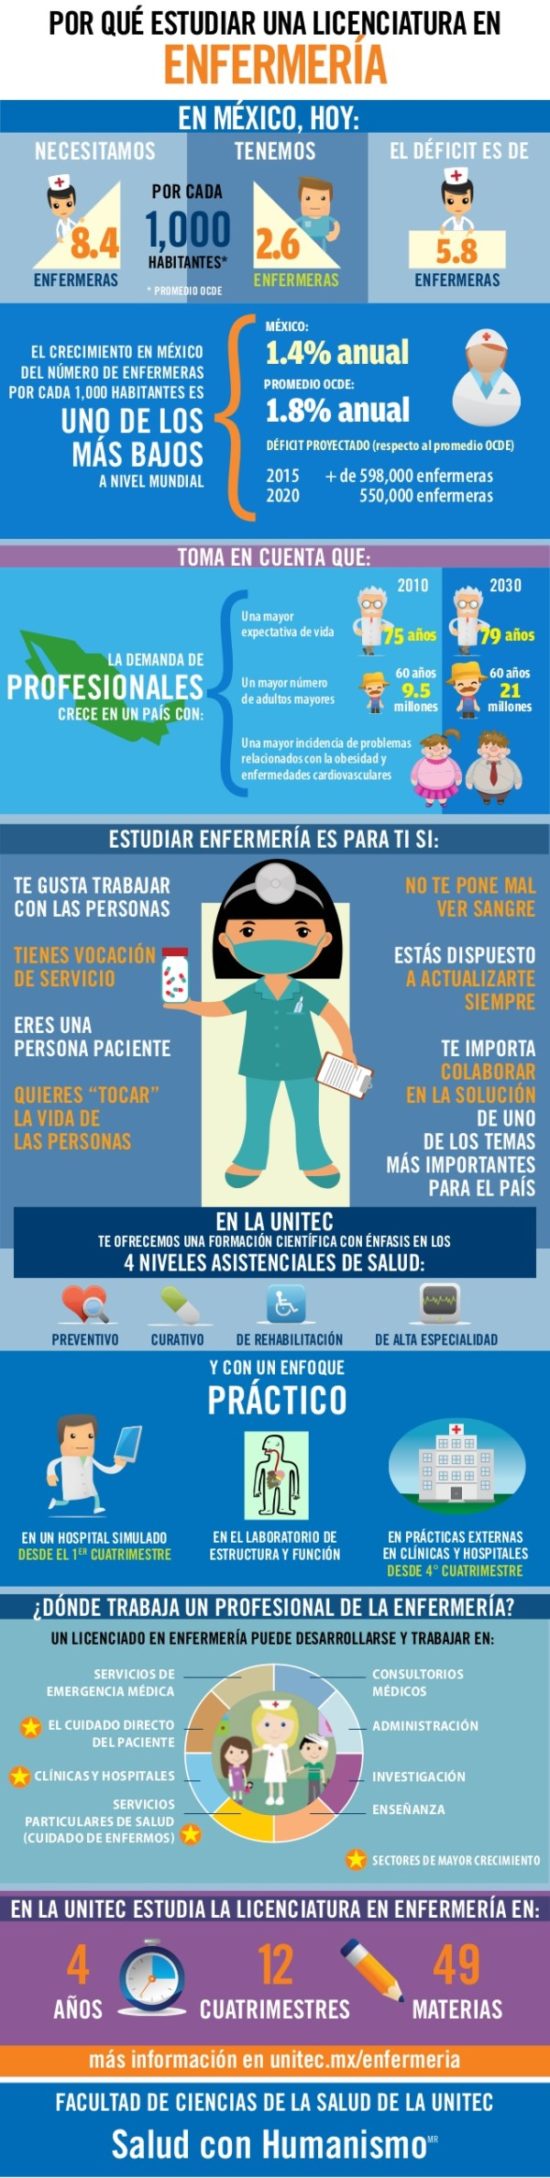 Infografia Día de la Enfermera (2)